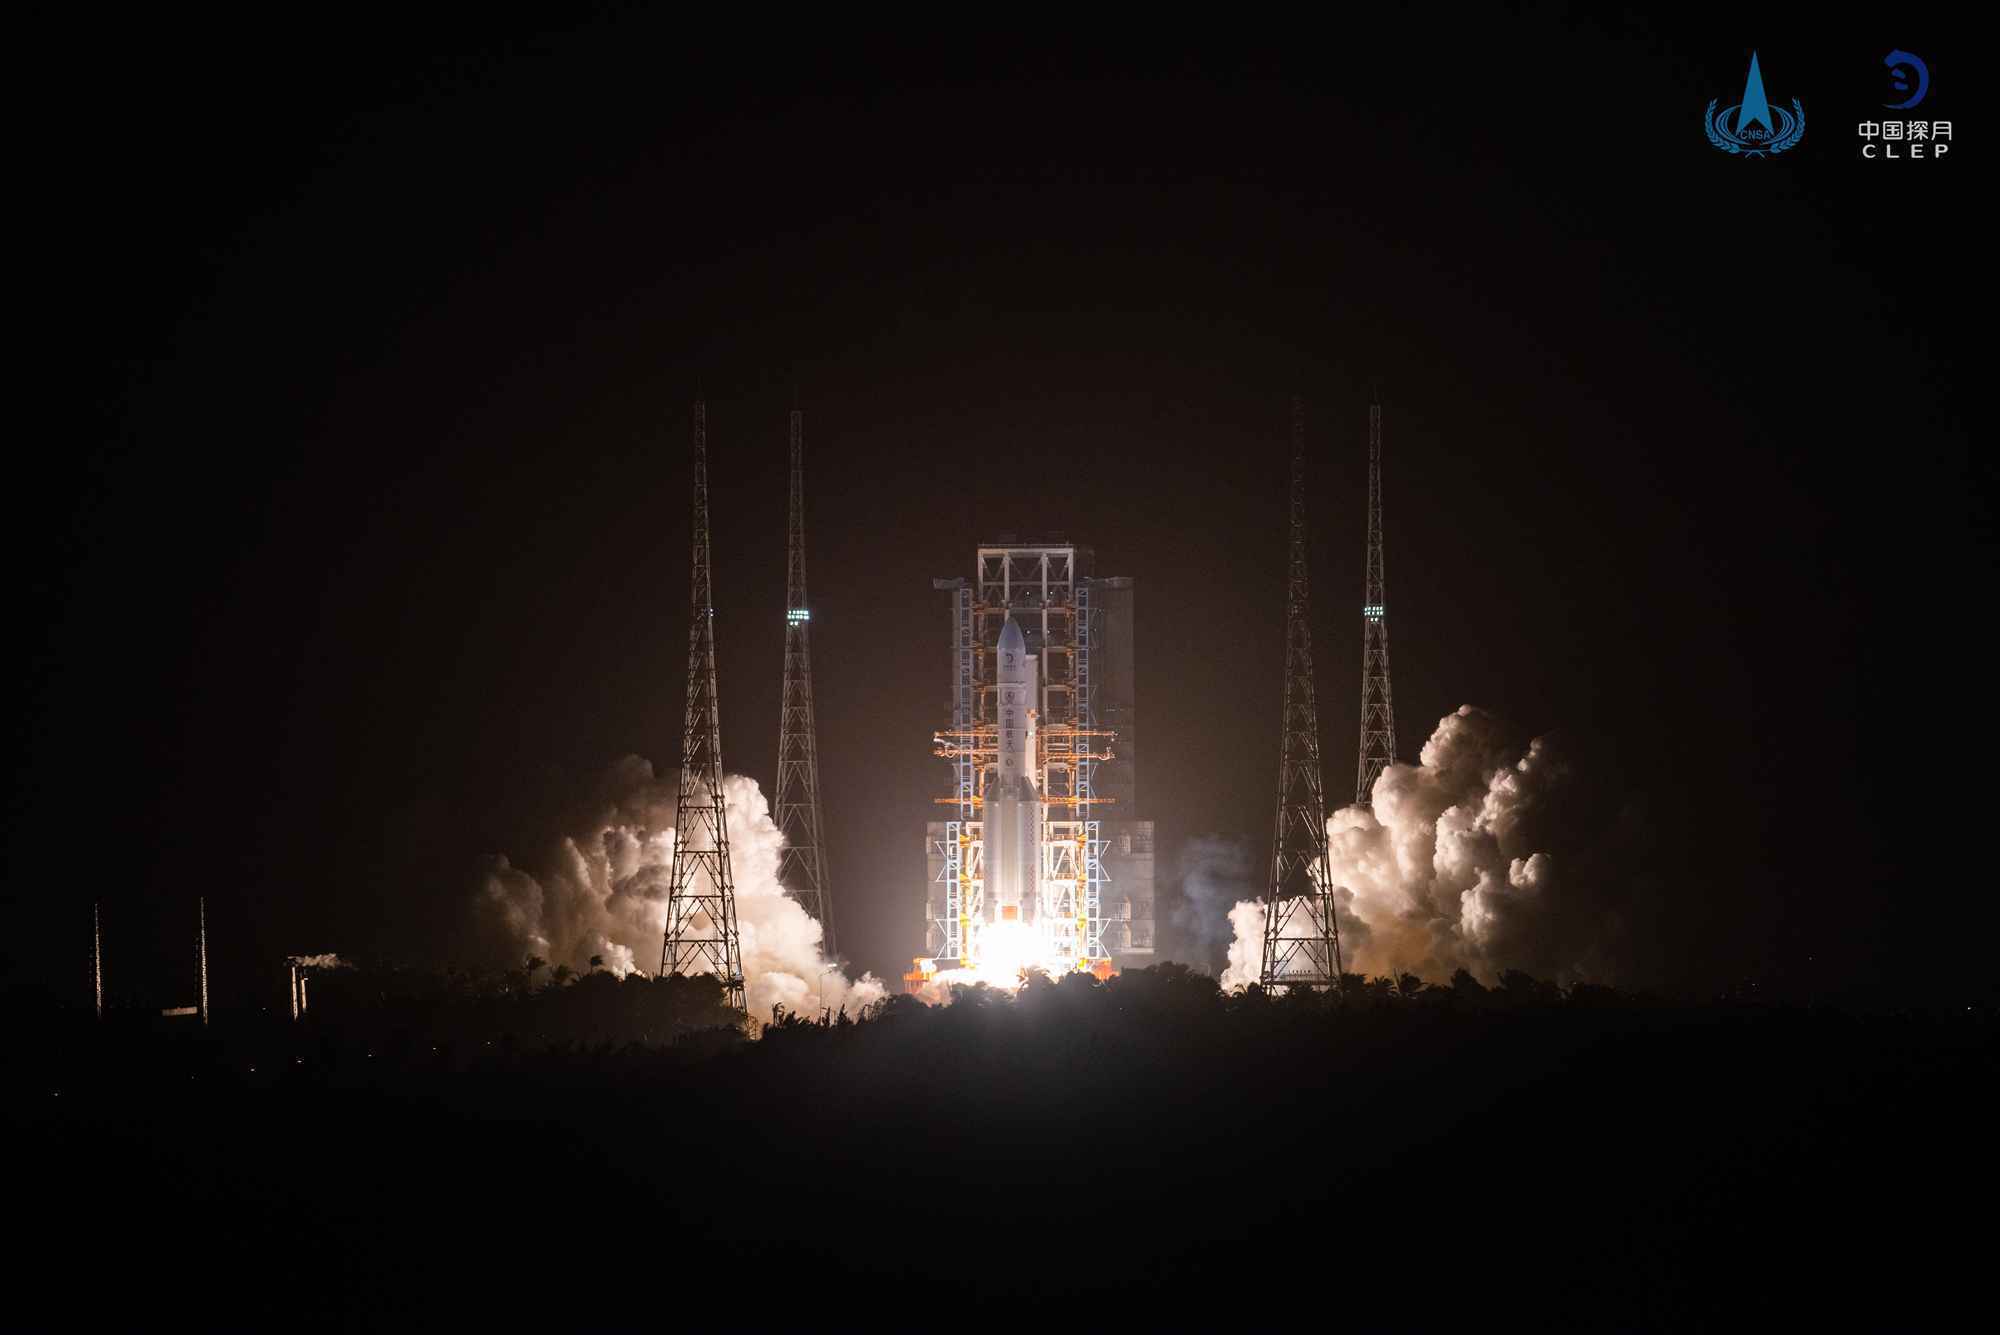 嫦娥五号探测器发射圆满成功 开启我国首次地外天体采样返回之旅